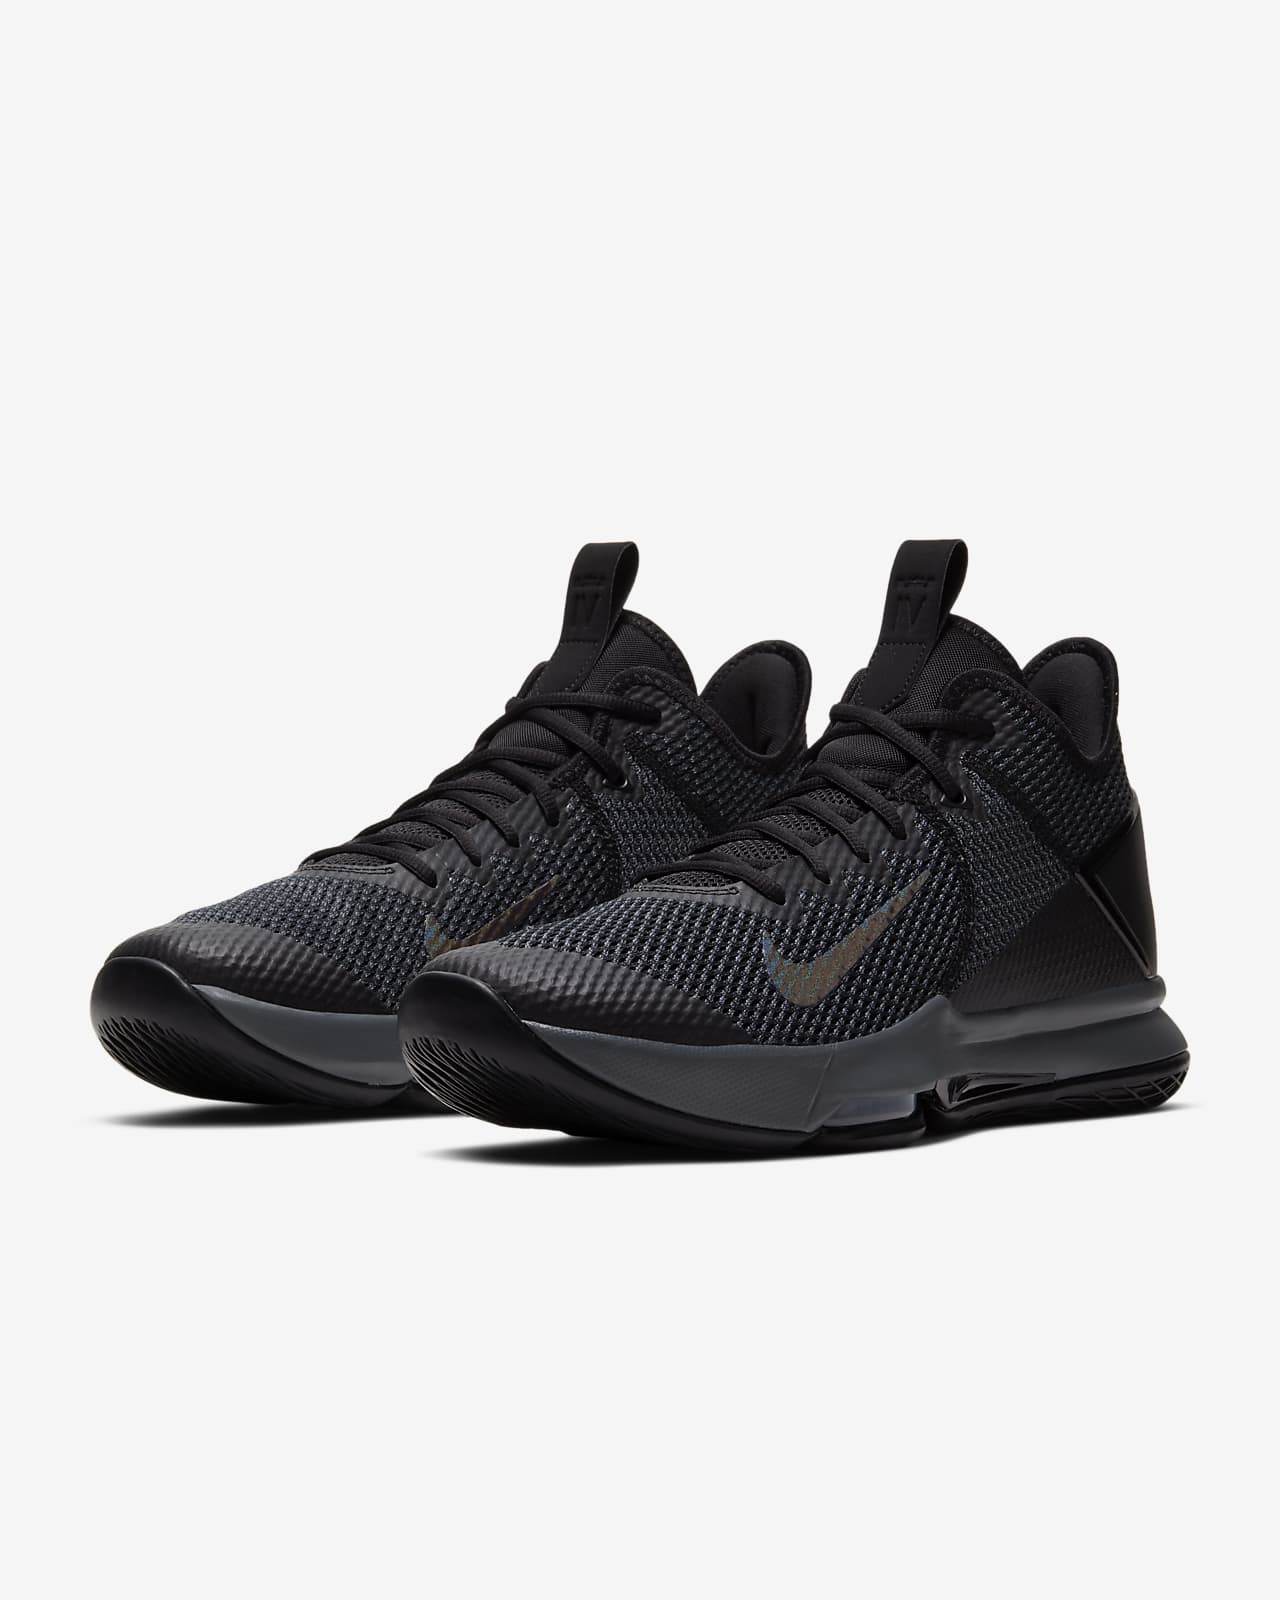 Nike LeBron Witness 4 Black/Iron Grey